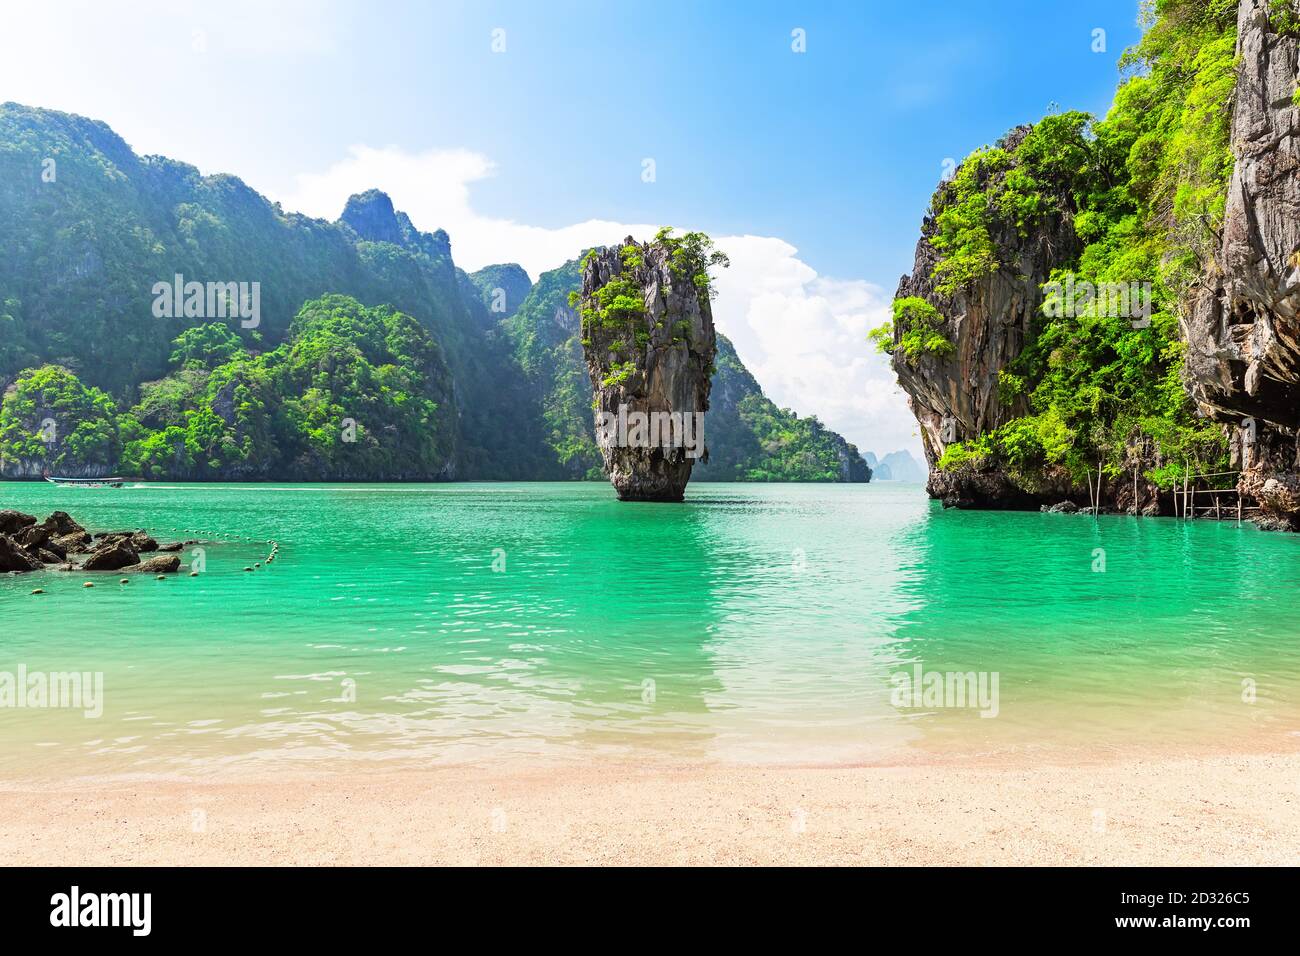 Famosa isola di James Bond vicino a Phuket in Thailandia. Foto di viaggio dell'isola di James Bond nella baia di Phang Nga, Thailandia. Foto Stock